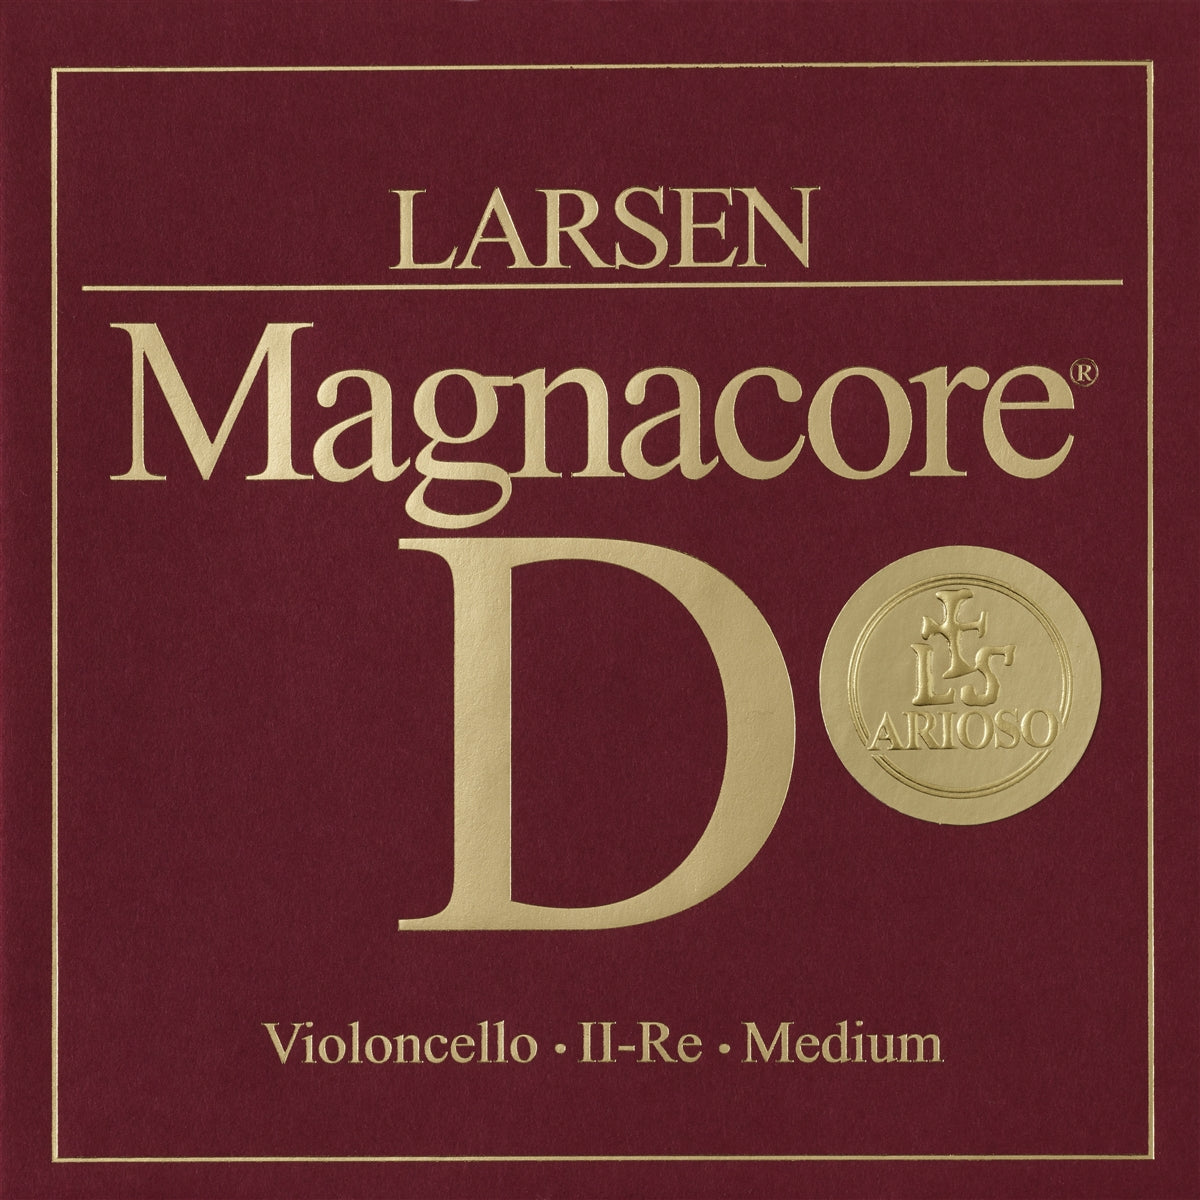 Larsen Magnacore Arioso Cello D String